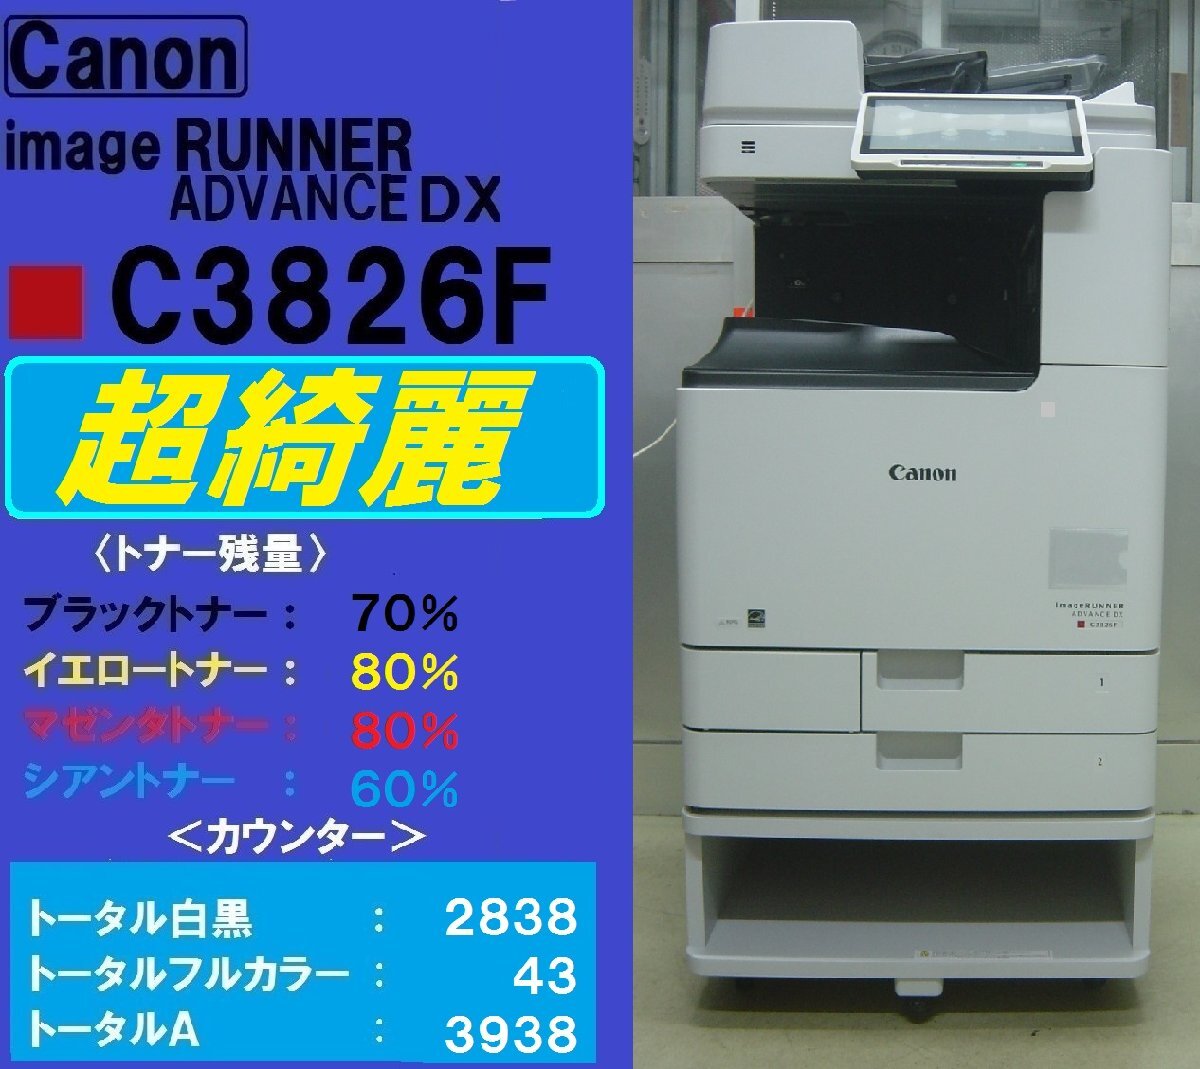  счетчик высшее немного 6,819 листов * супер красивый Canon полный цветная многофункциональная машина ADVANCE DX C3826F* беспроводной LAN* Miyagi departure *